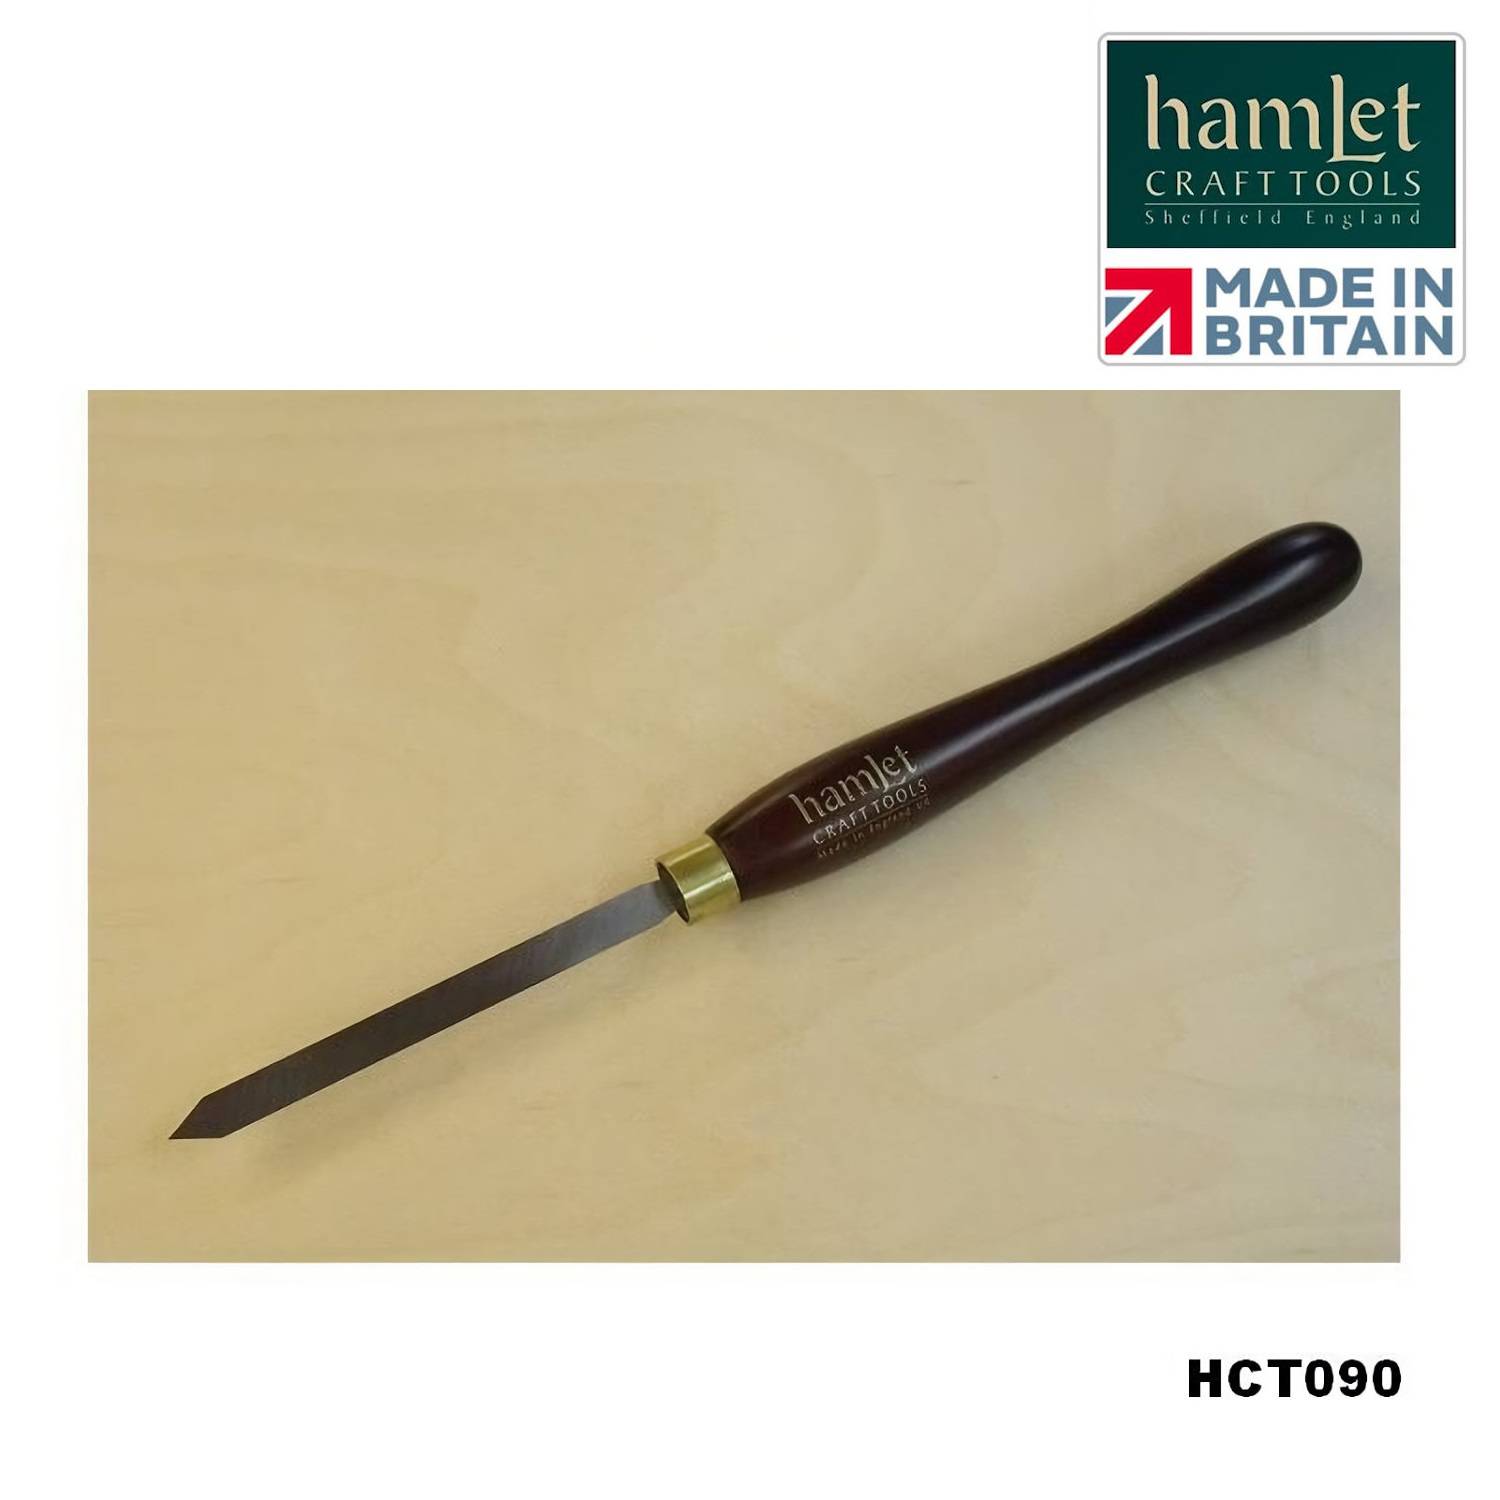 afsteekbeitel-Hamlet-HCT090